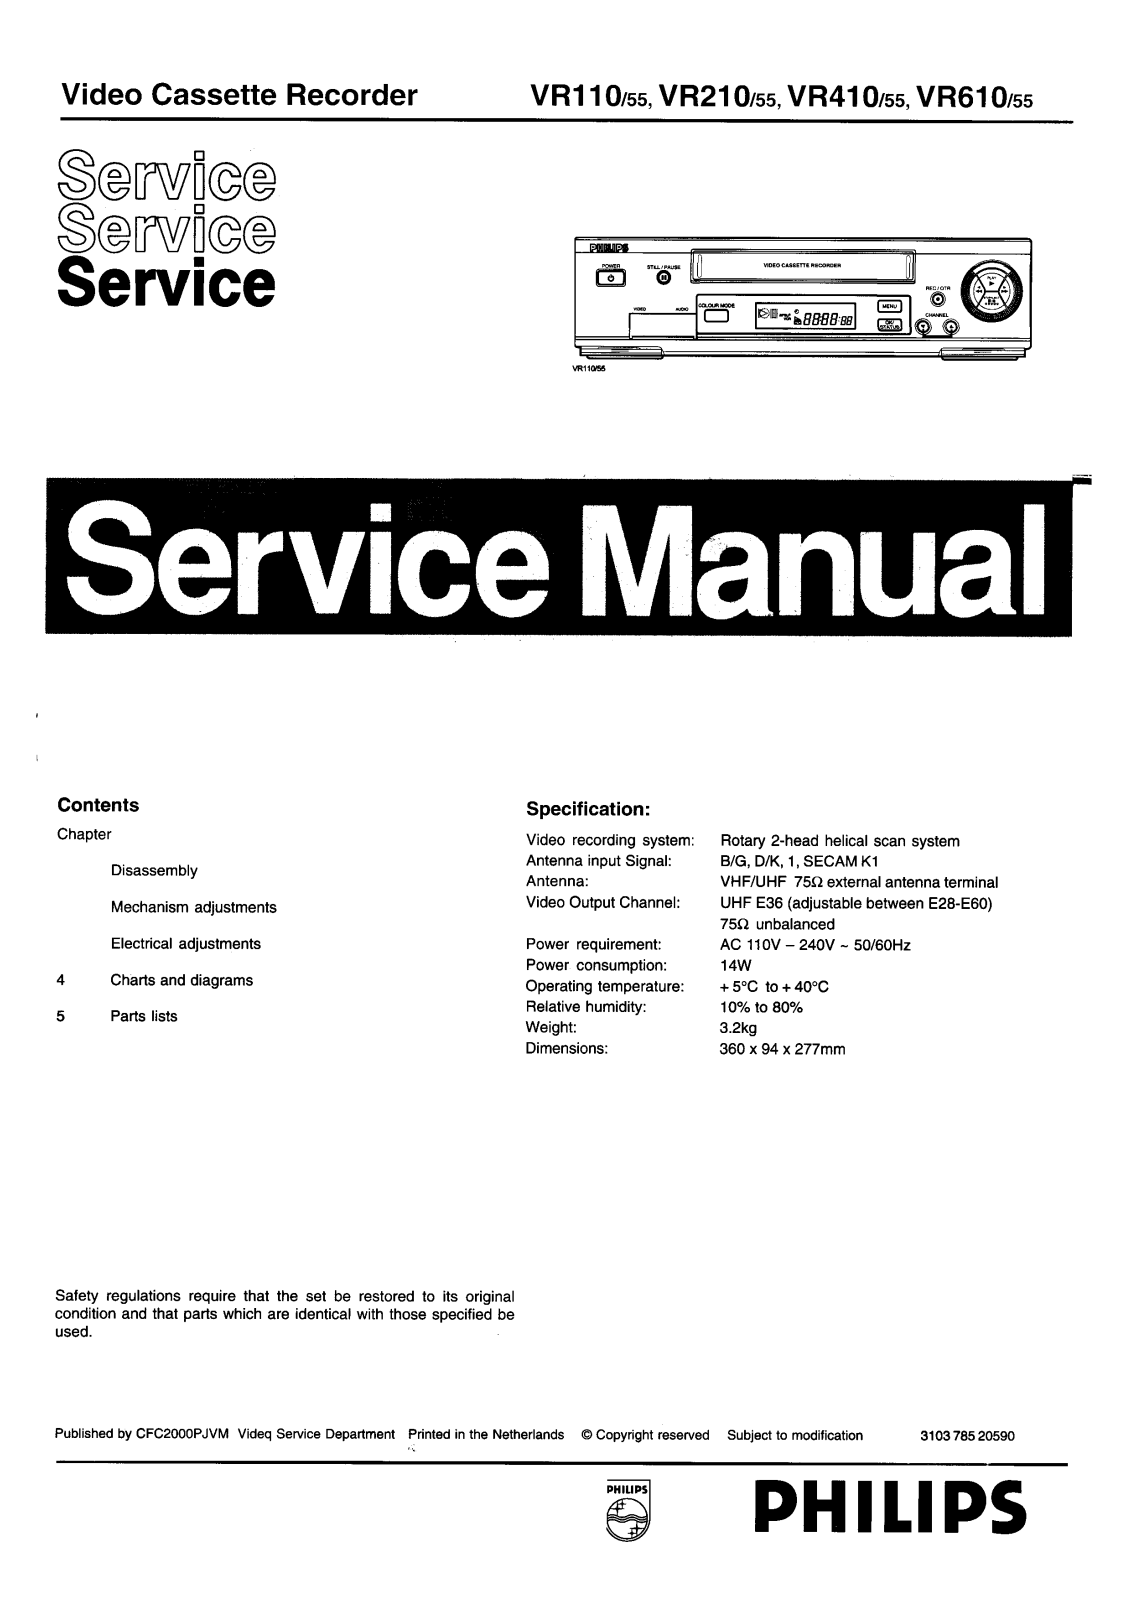 Philips VR110, VR210, VR410, VR610 Service Manual